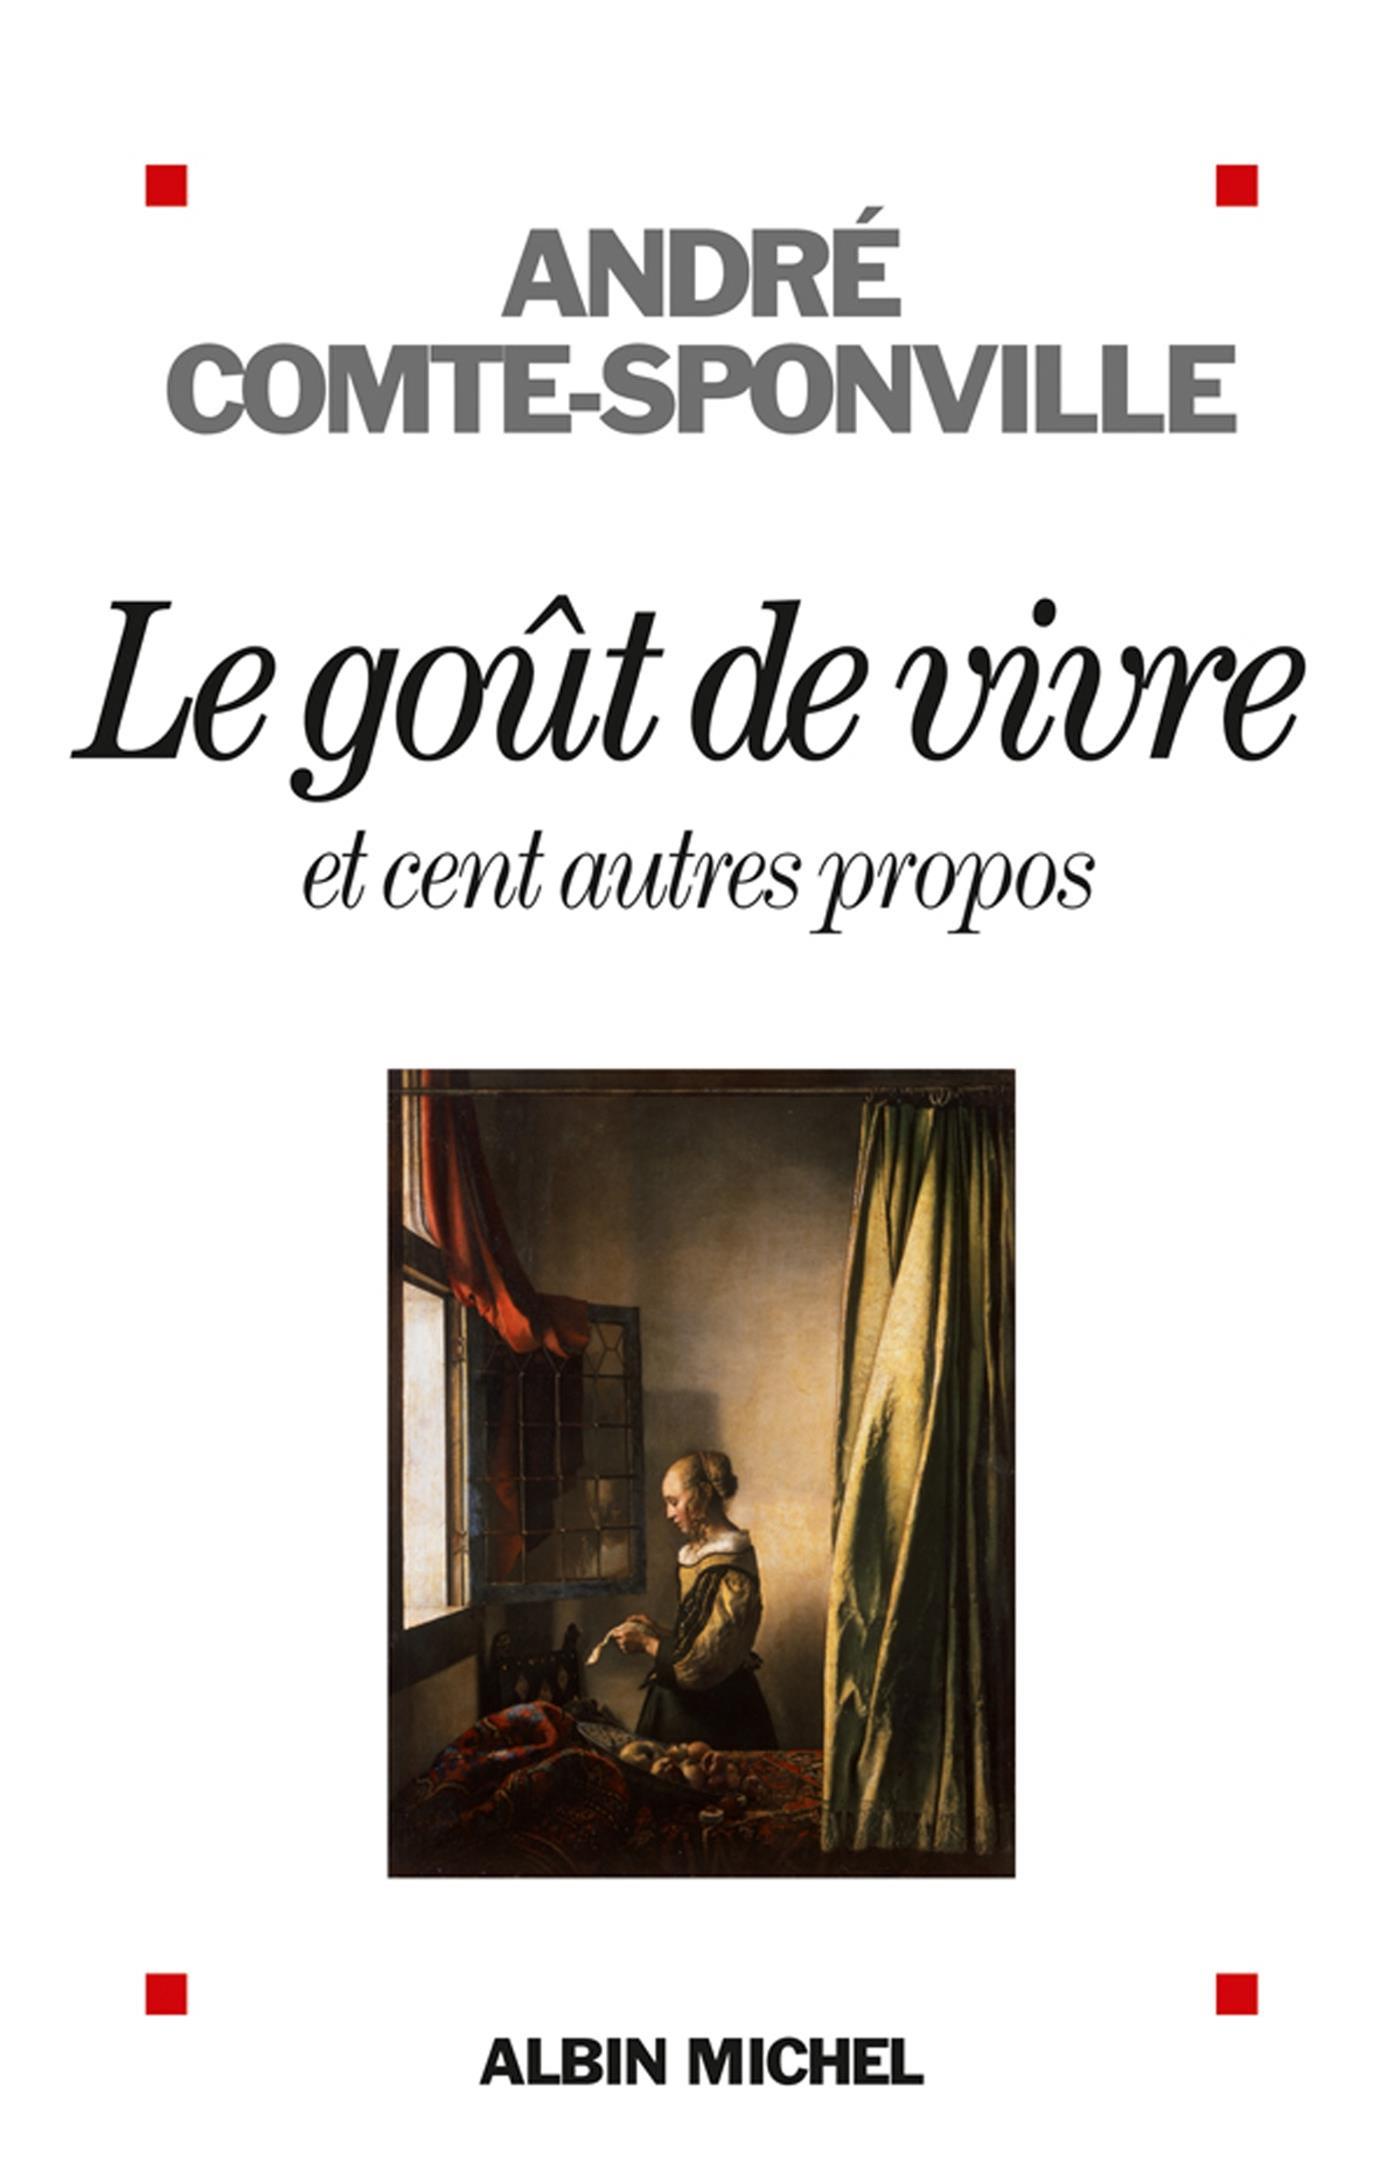 C'est chose tendre que la vie - Comte-Sponville André - 9782226314895, Catalogue